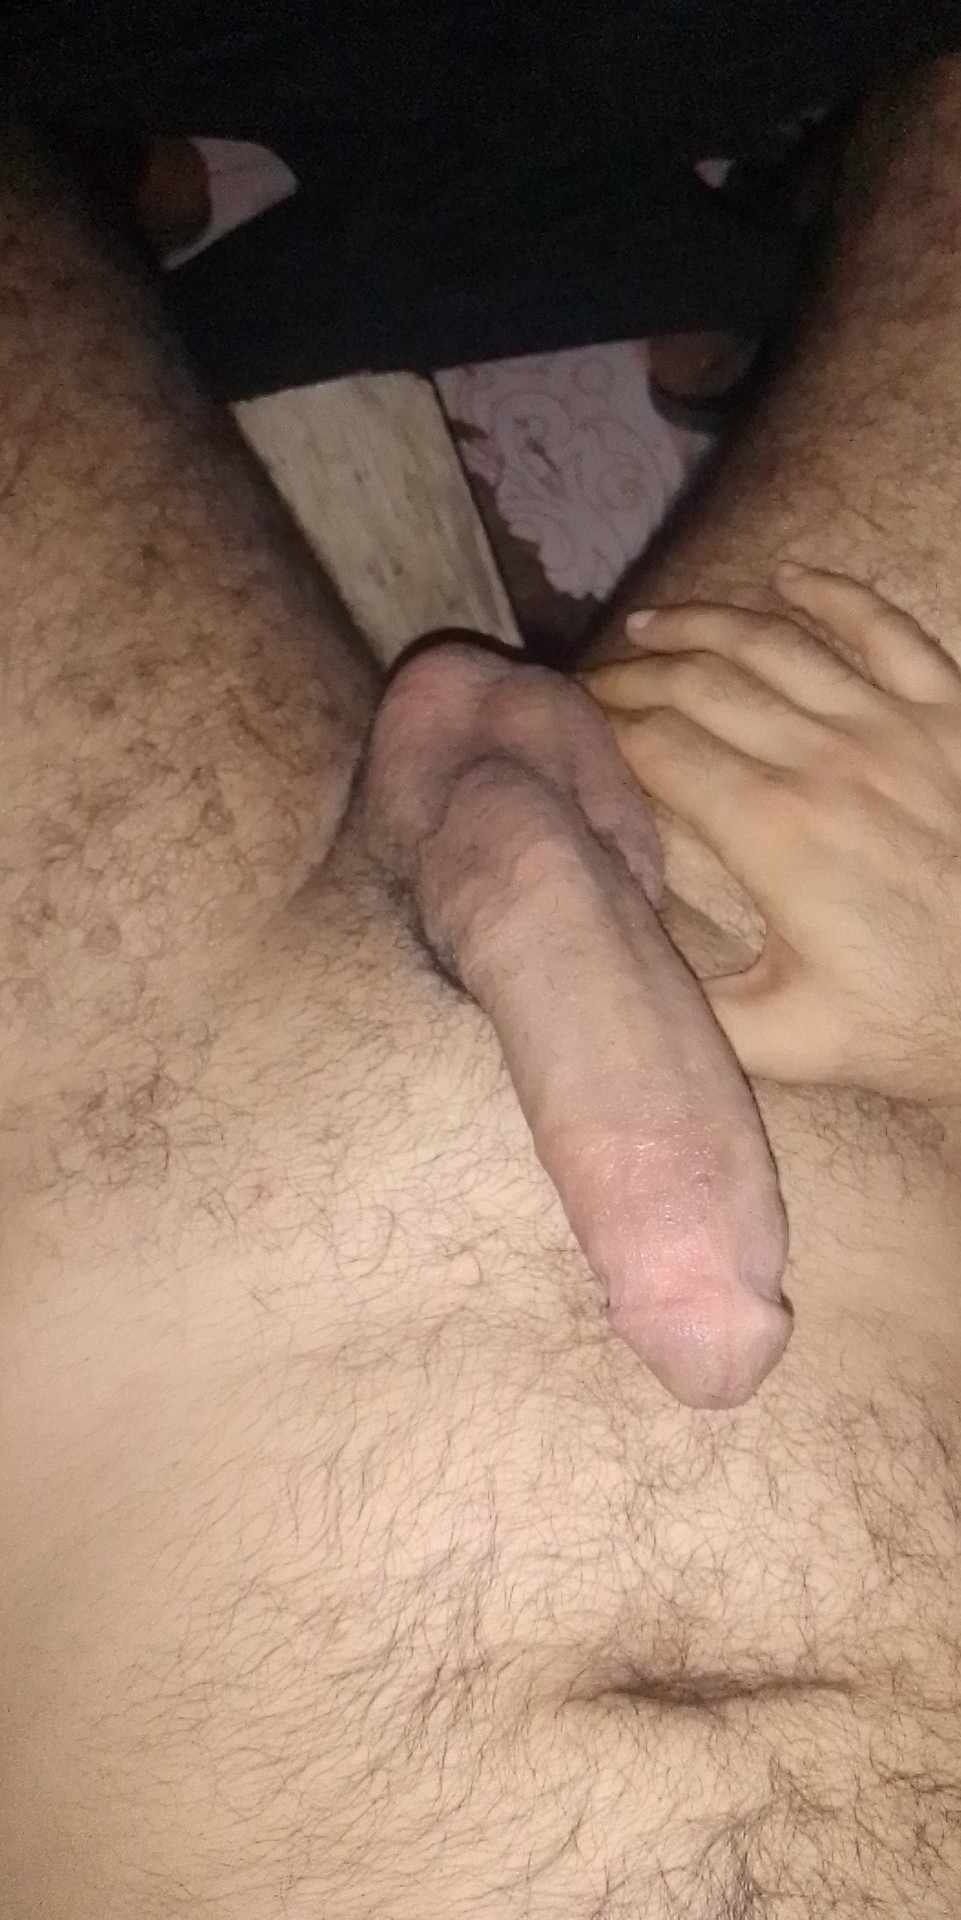 My dick pic